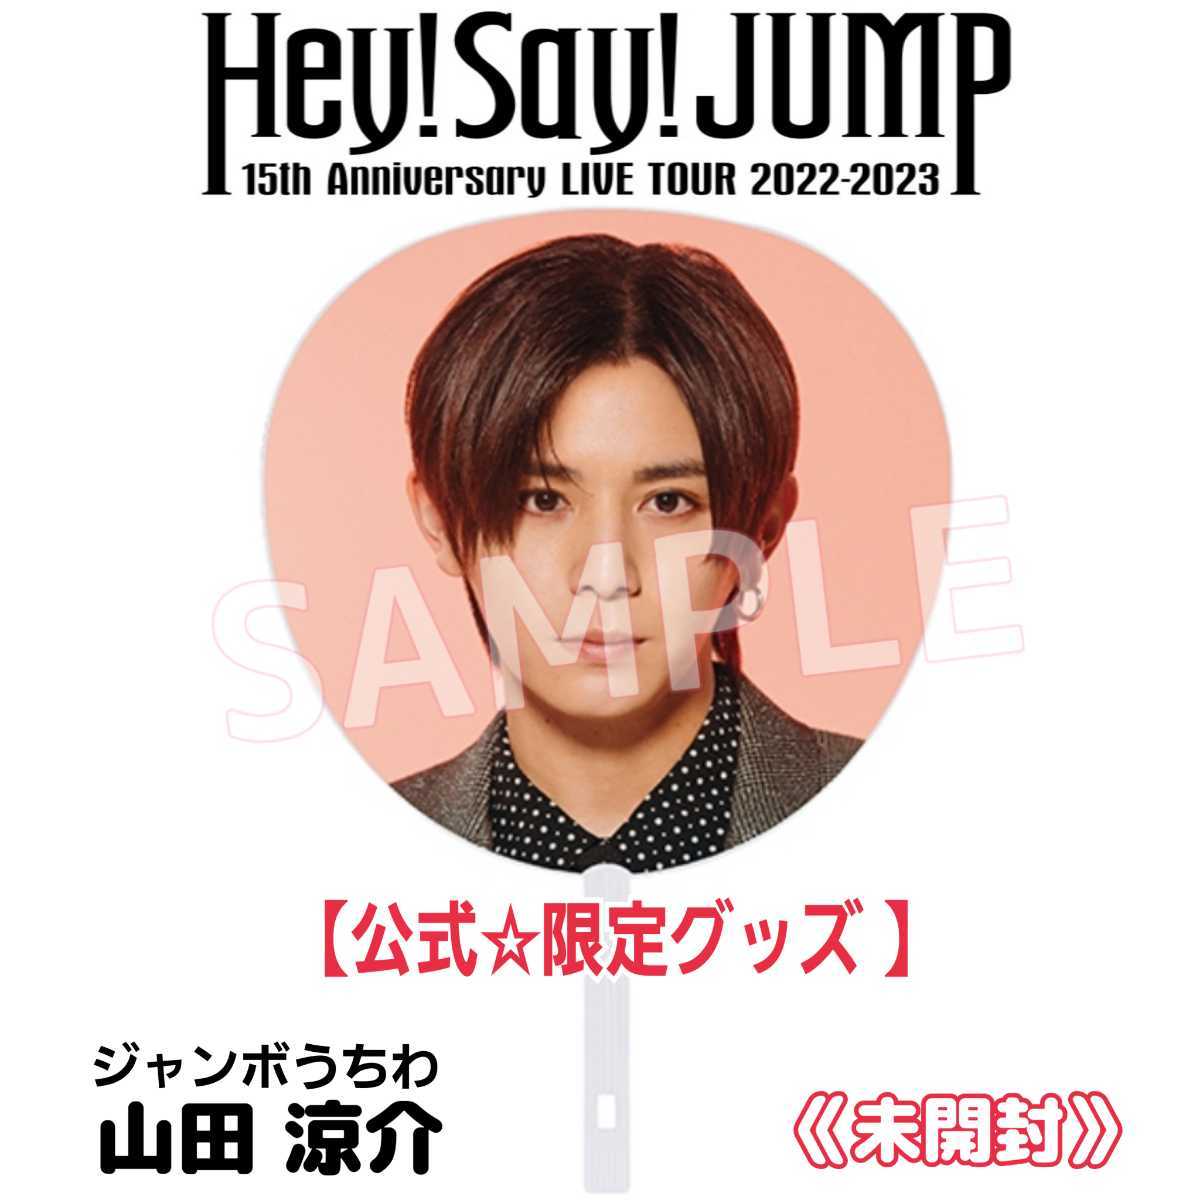 最新限定グッズ Hey Say JUMP15周年 15th Anniversary LIVE TOUR 2022-2023 山田涼介うちわ公式